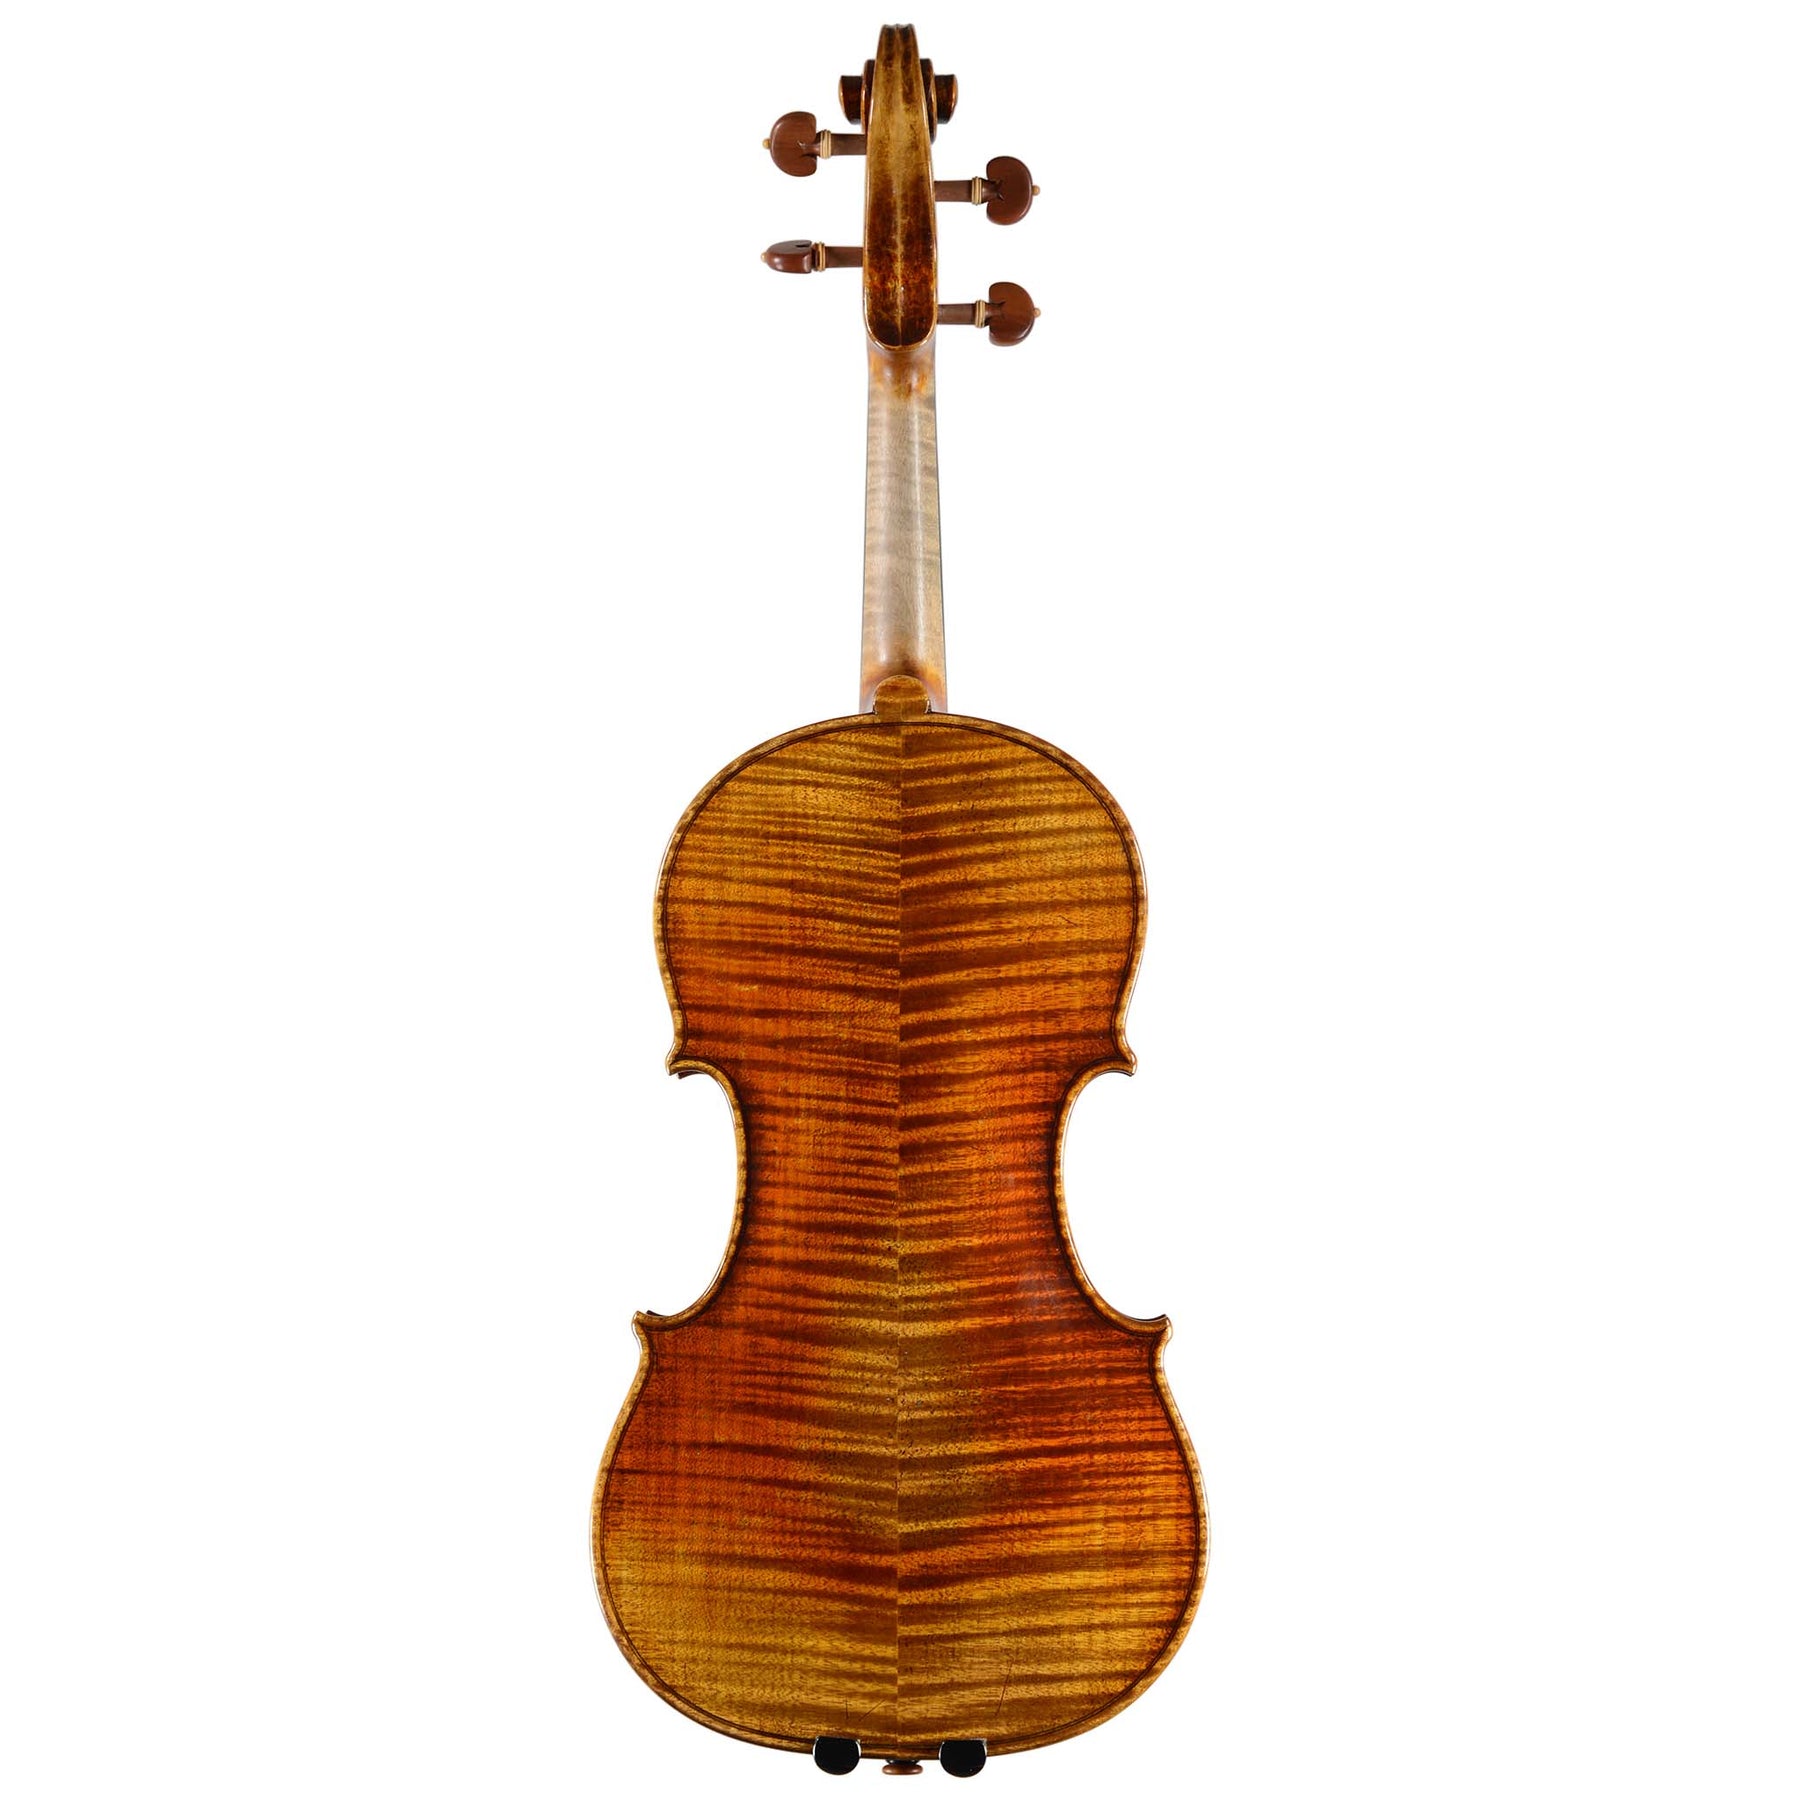 Fiddlershop Full Size Violin (FS348)